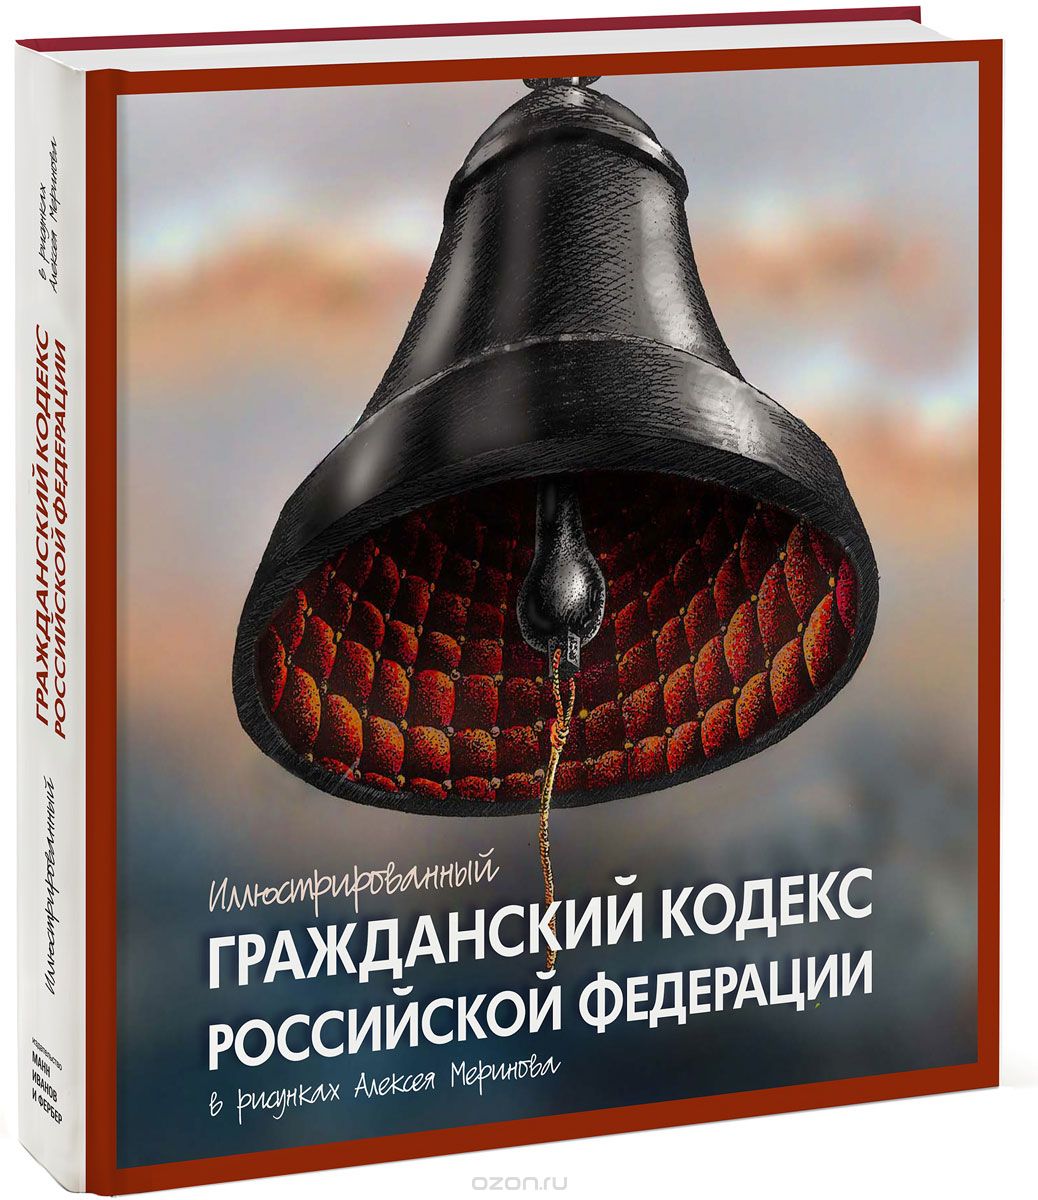 Скачать книгу "Иллюстрированный Гражданский кодекс Российской Федерации"